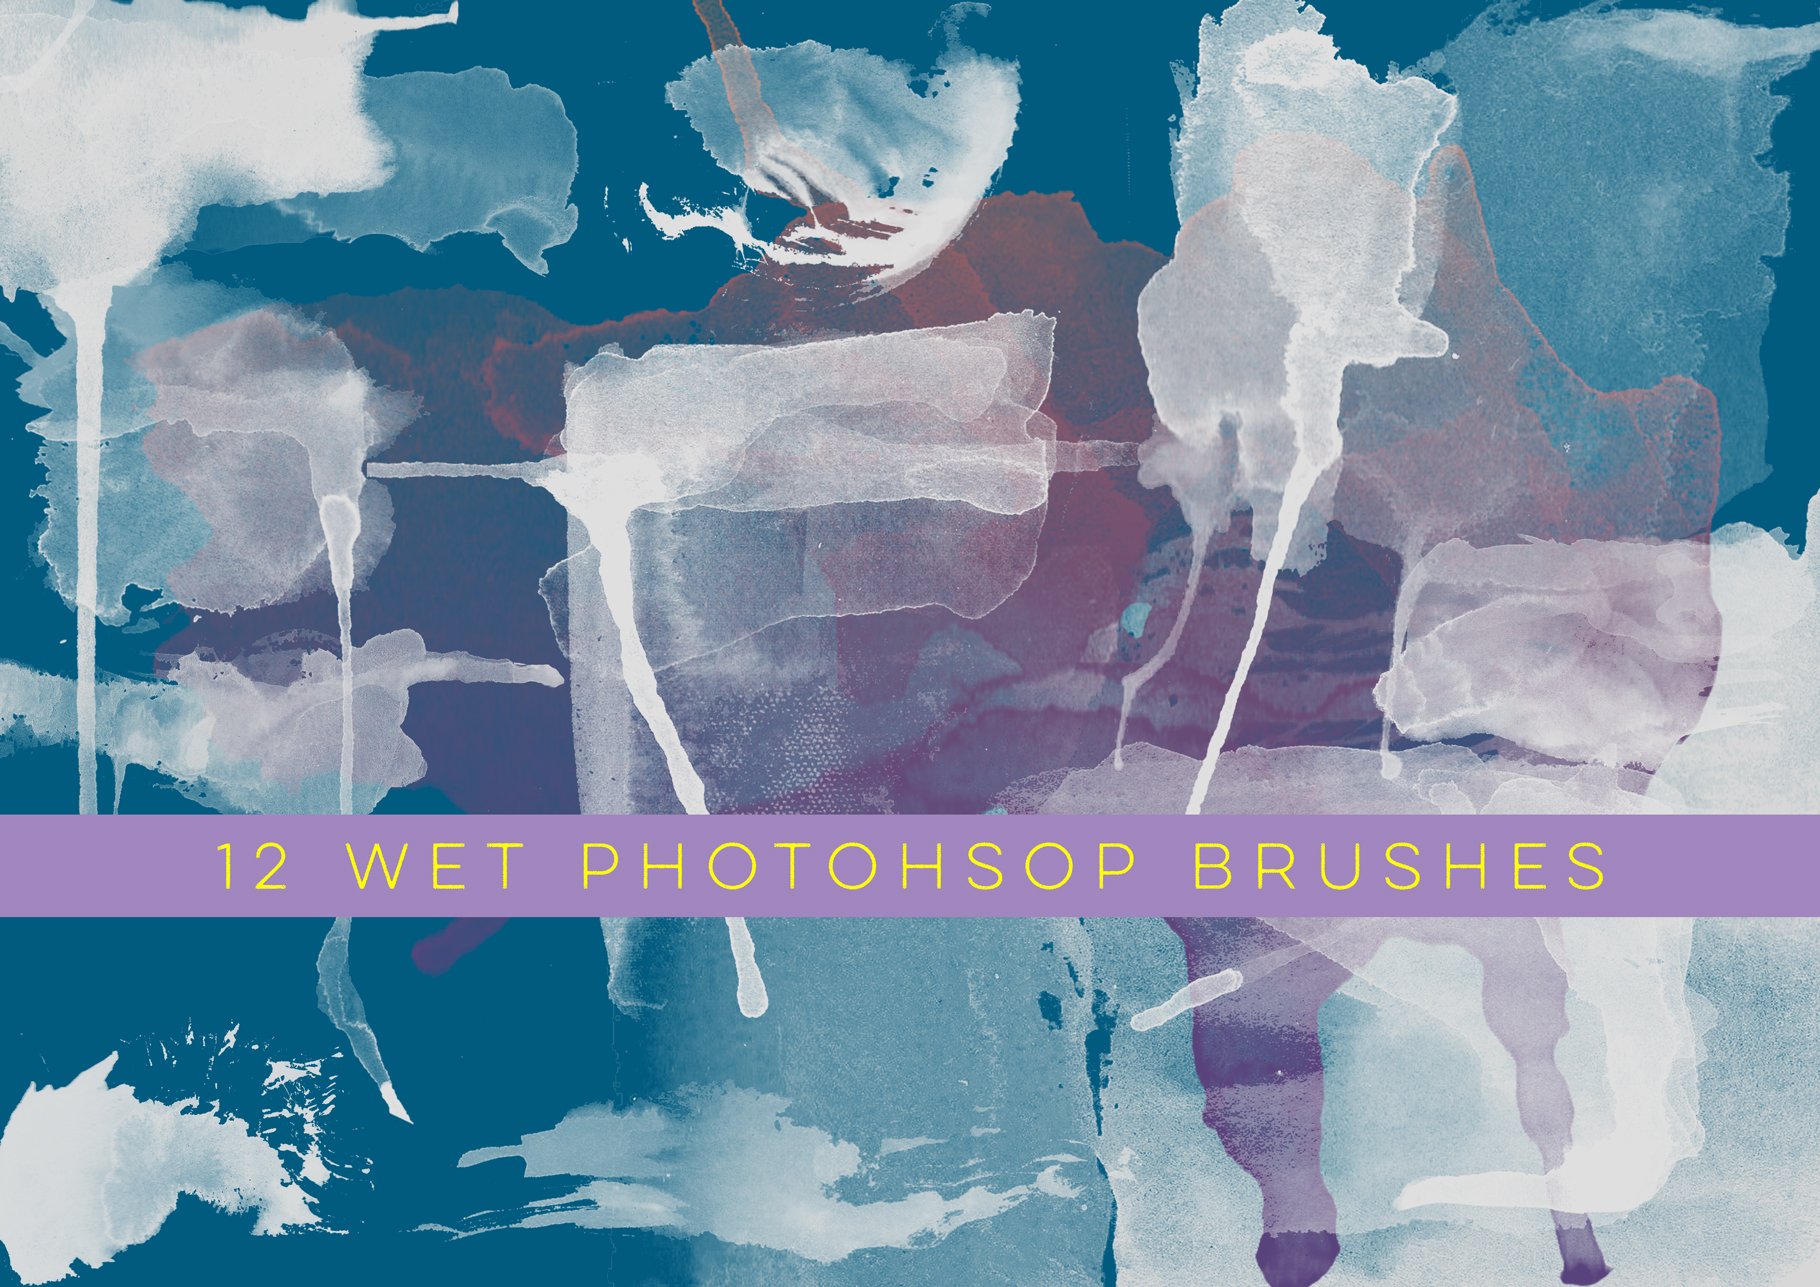 12 Wet Photoshop Brushescover image.